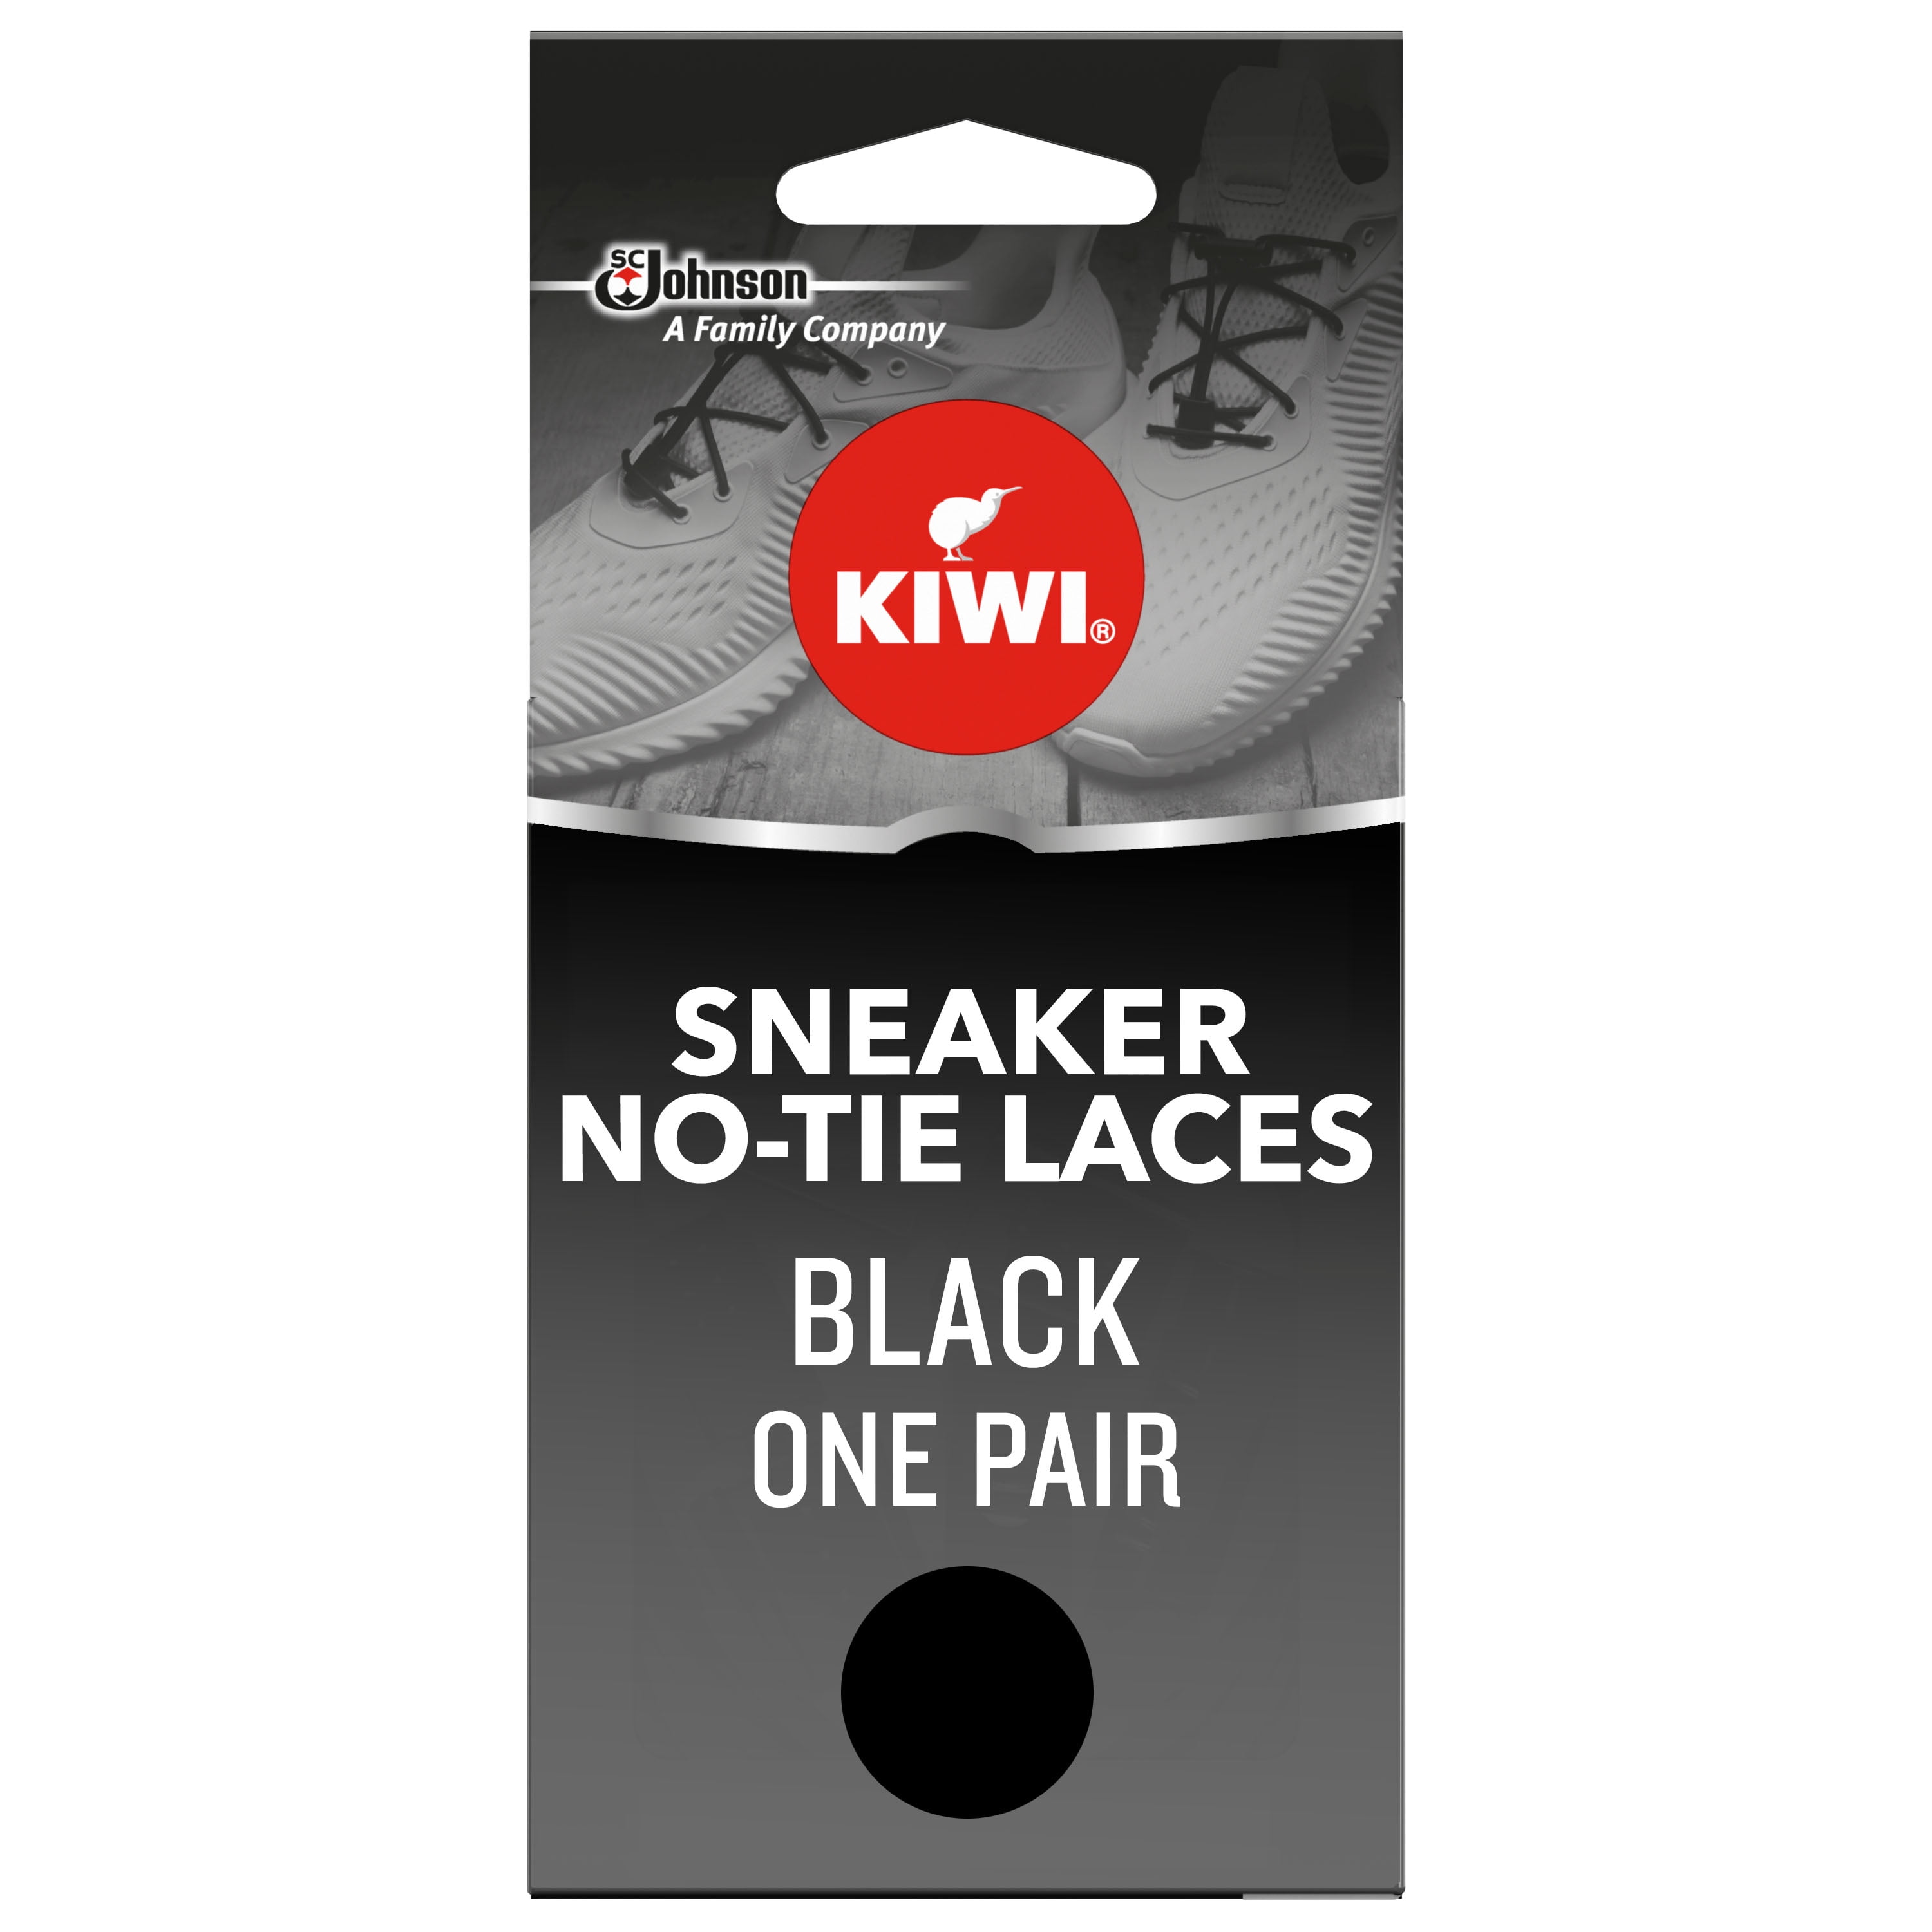 kiwi shoelaces walmart